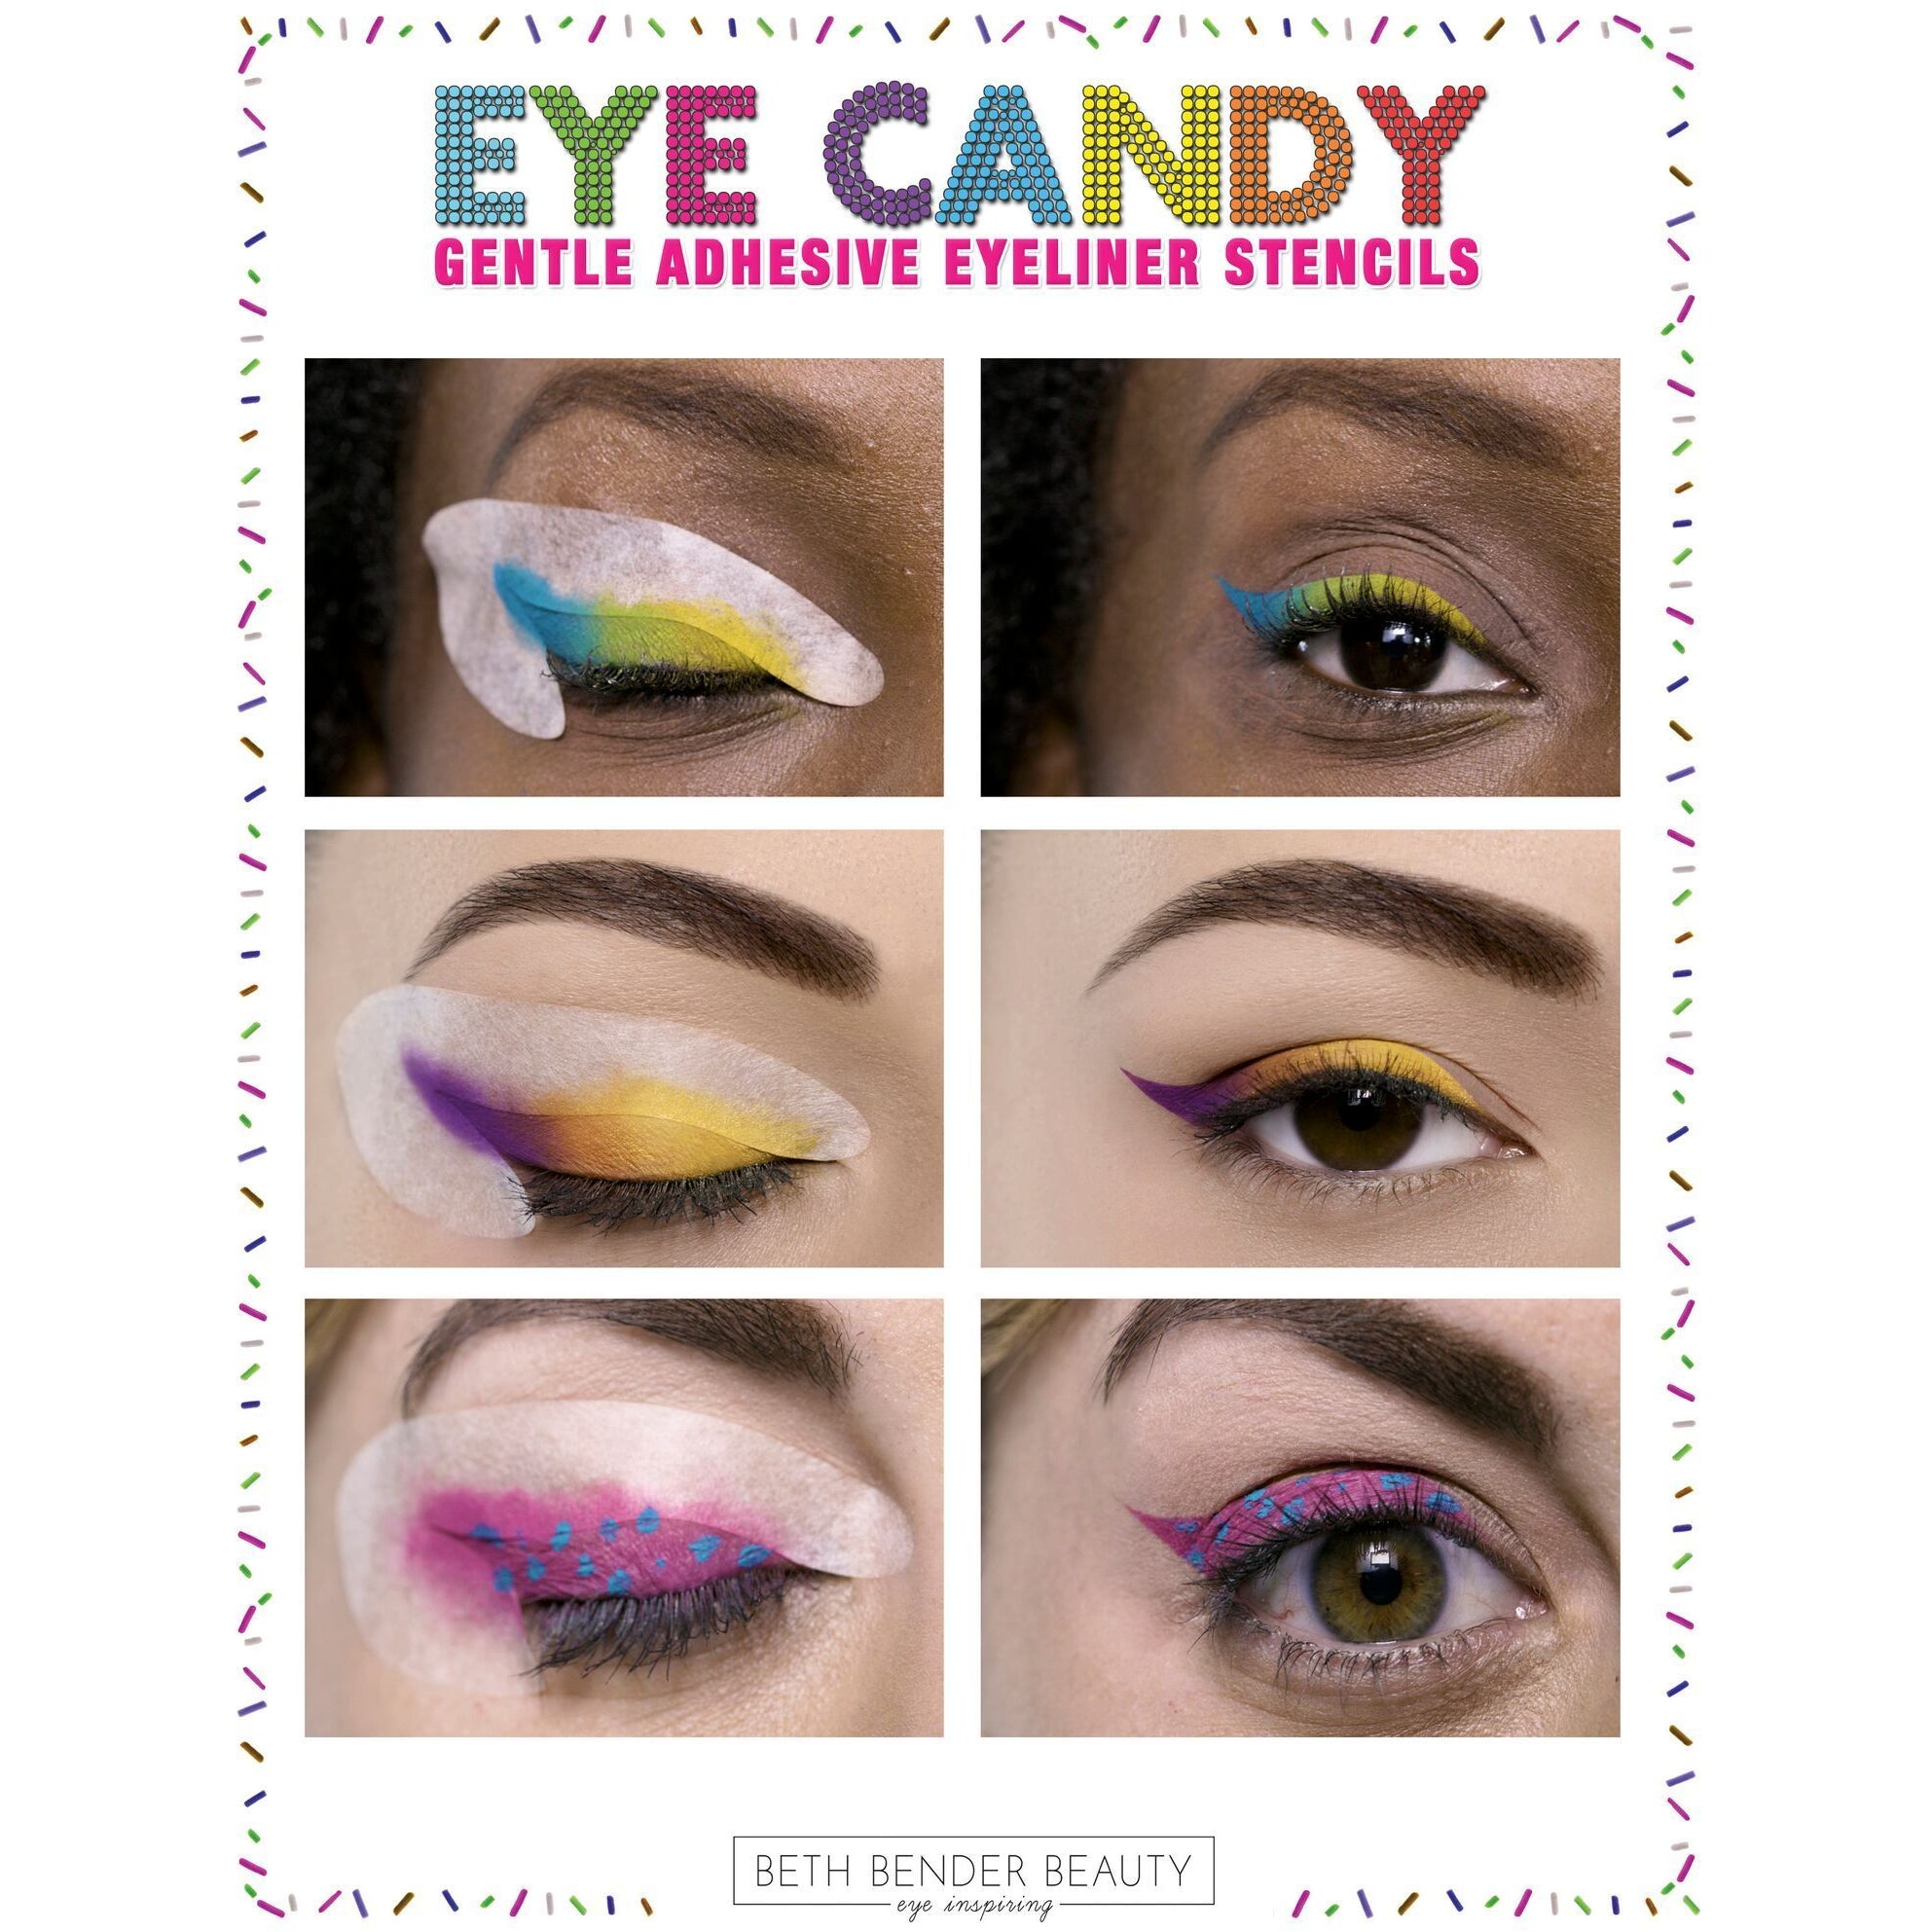 Bender Beauty Eye Candy Start Pack askderm.com